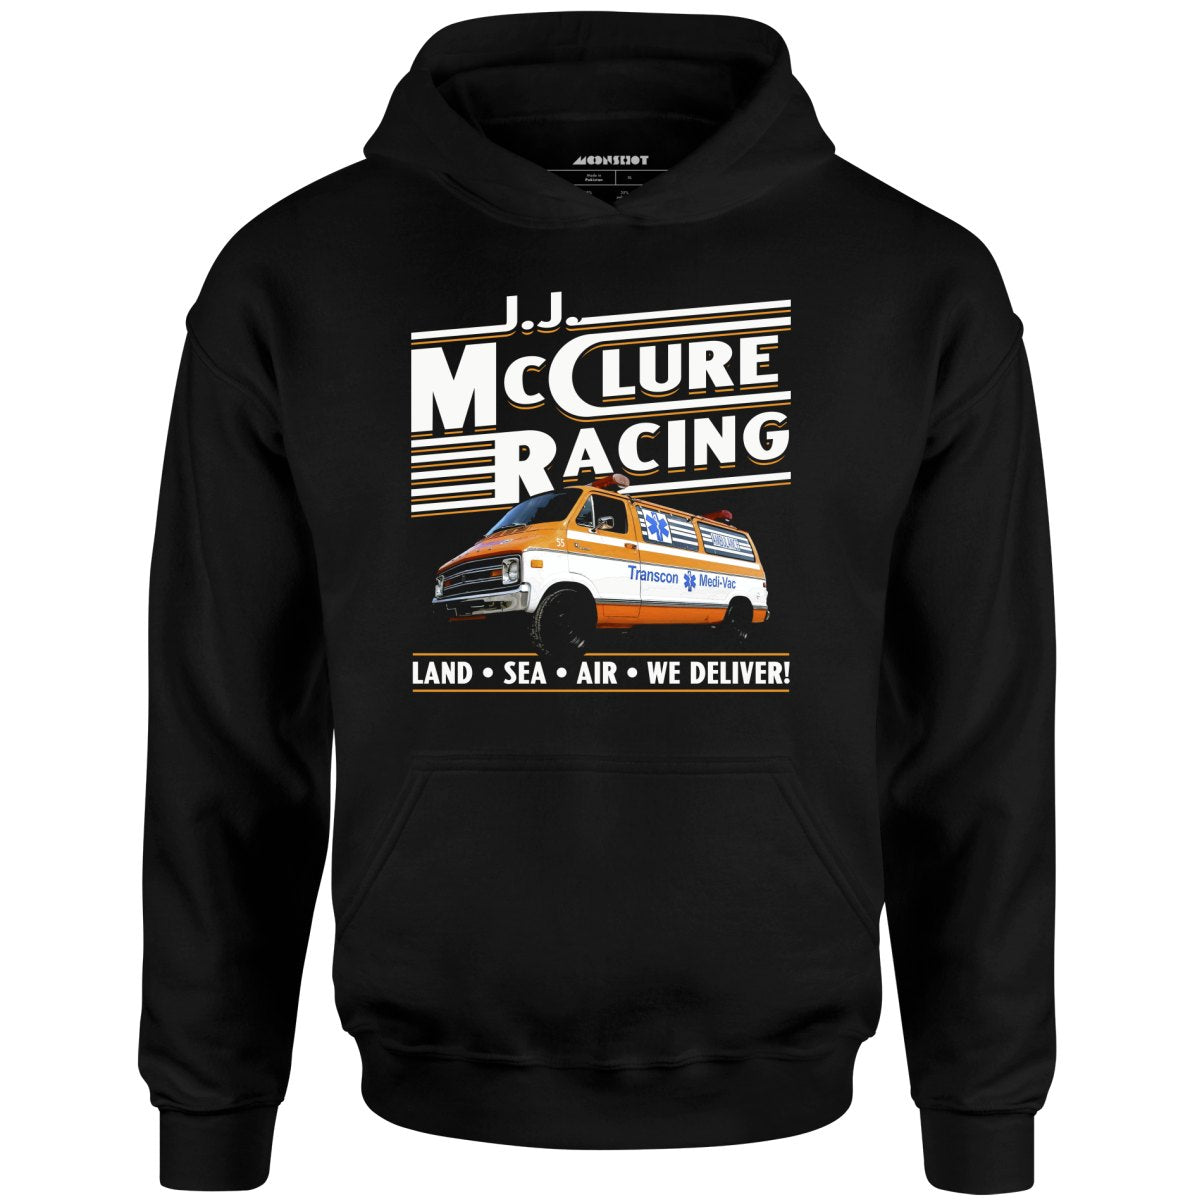 J.J. McClure Racing - Unisex Hoodie